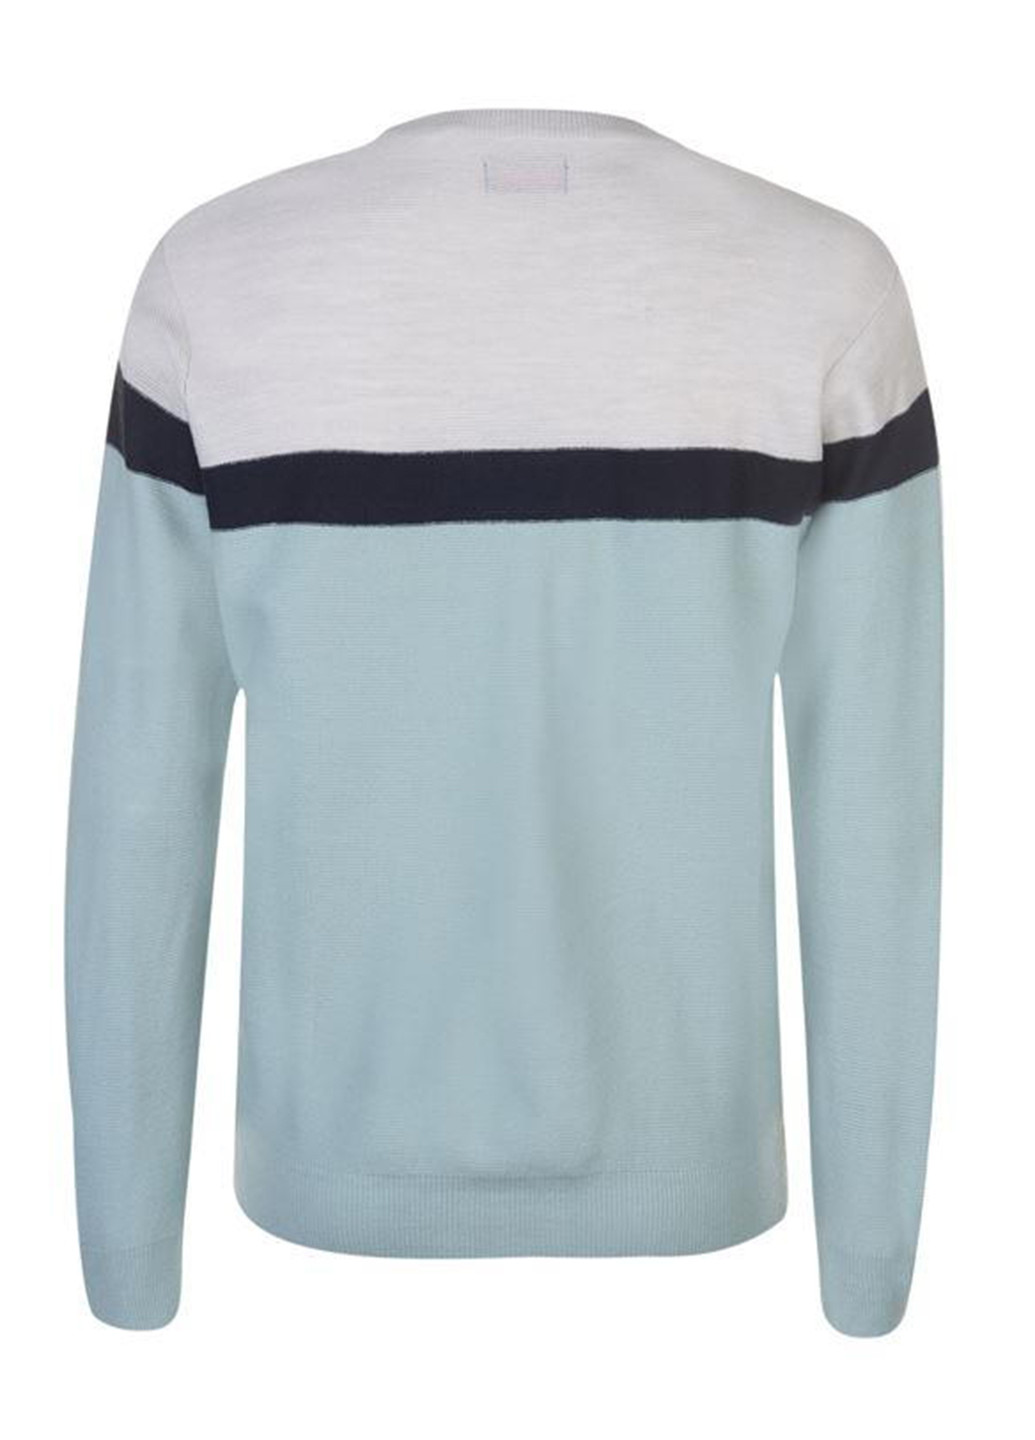 Мятный демисезонный пуловер пуловер Pierre Cardin